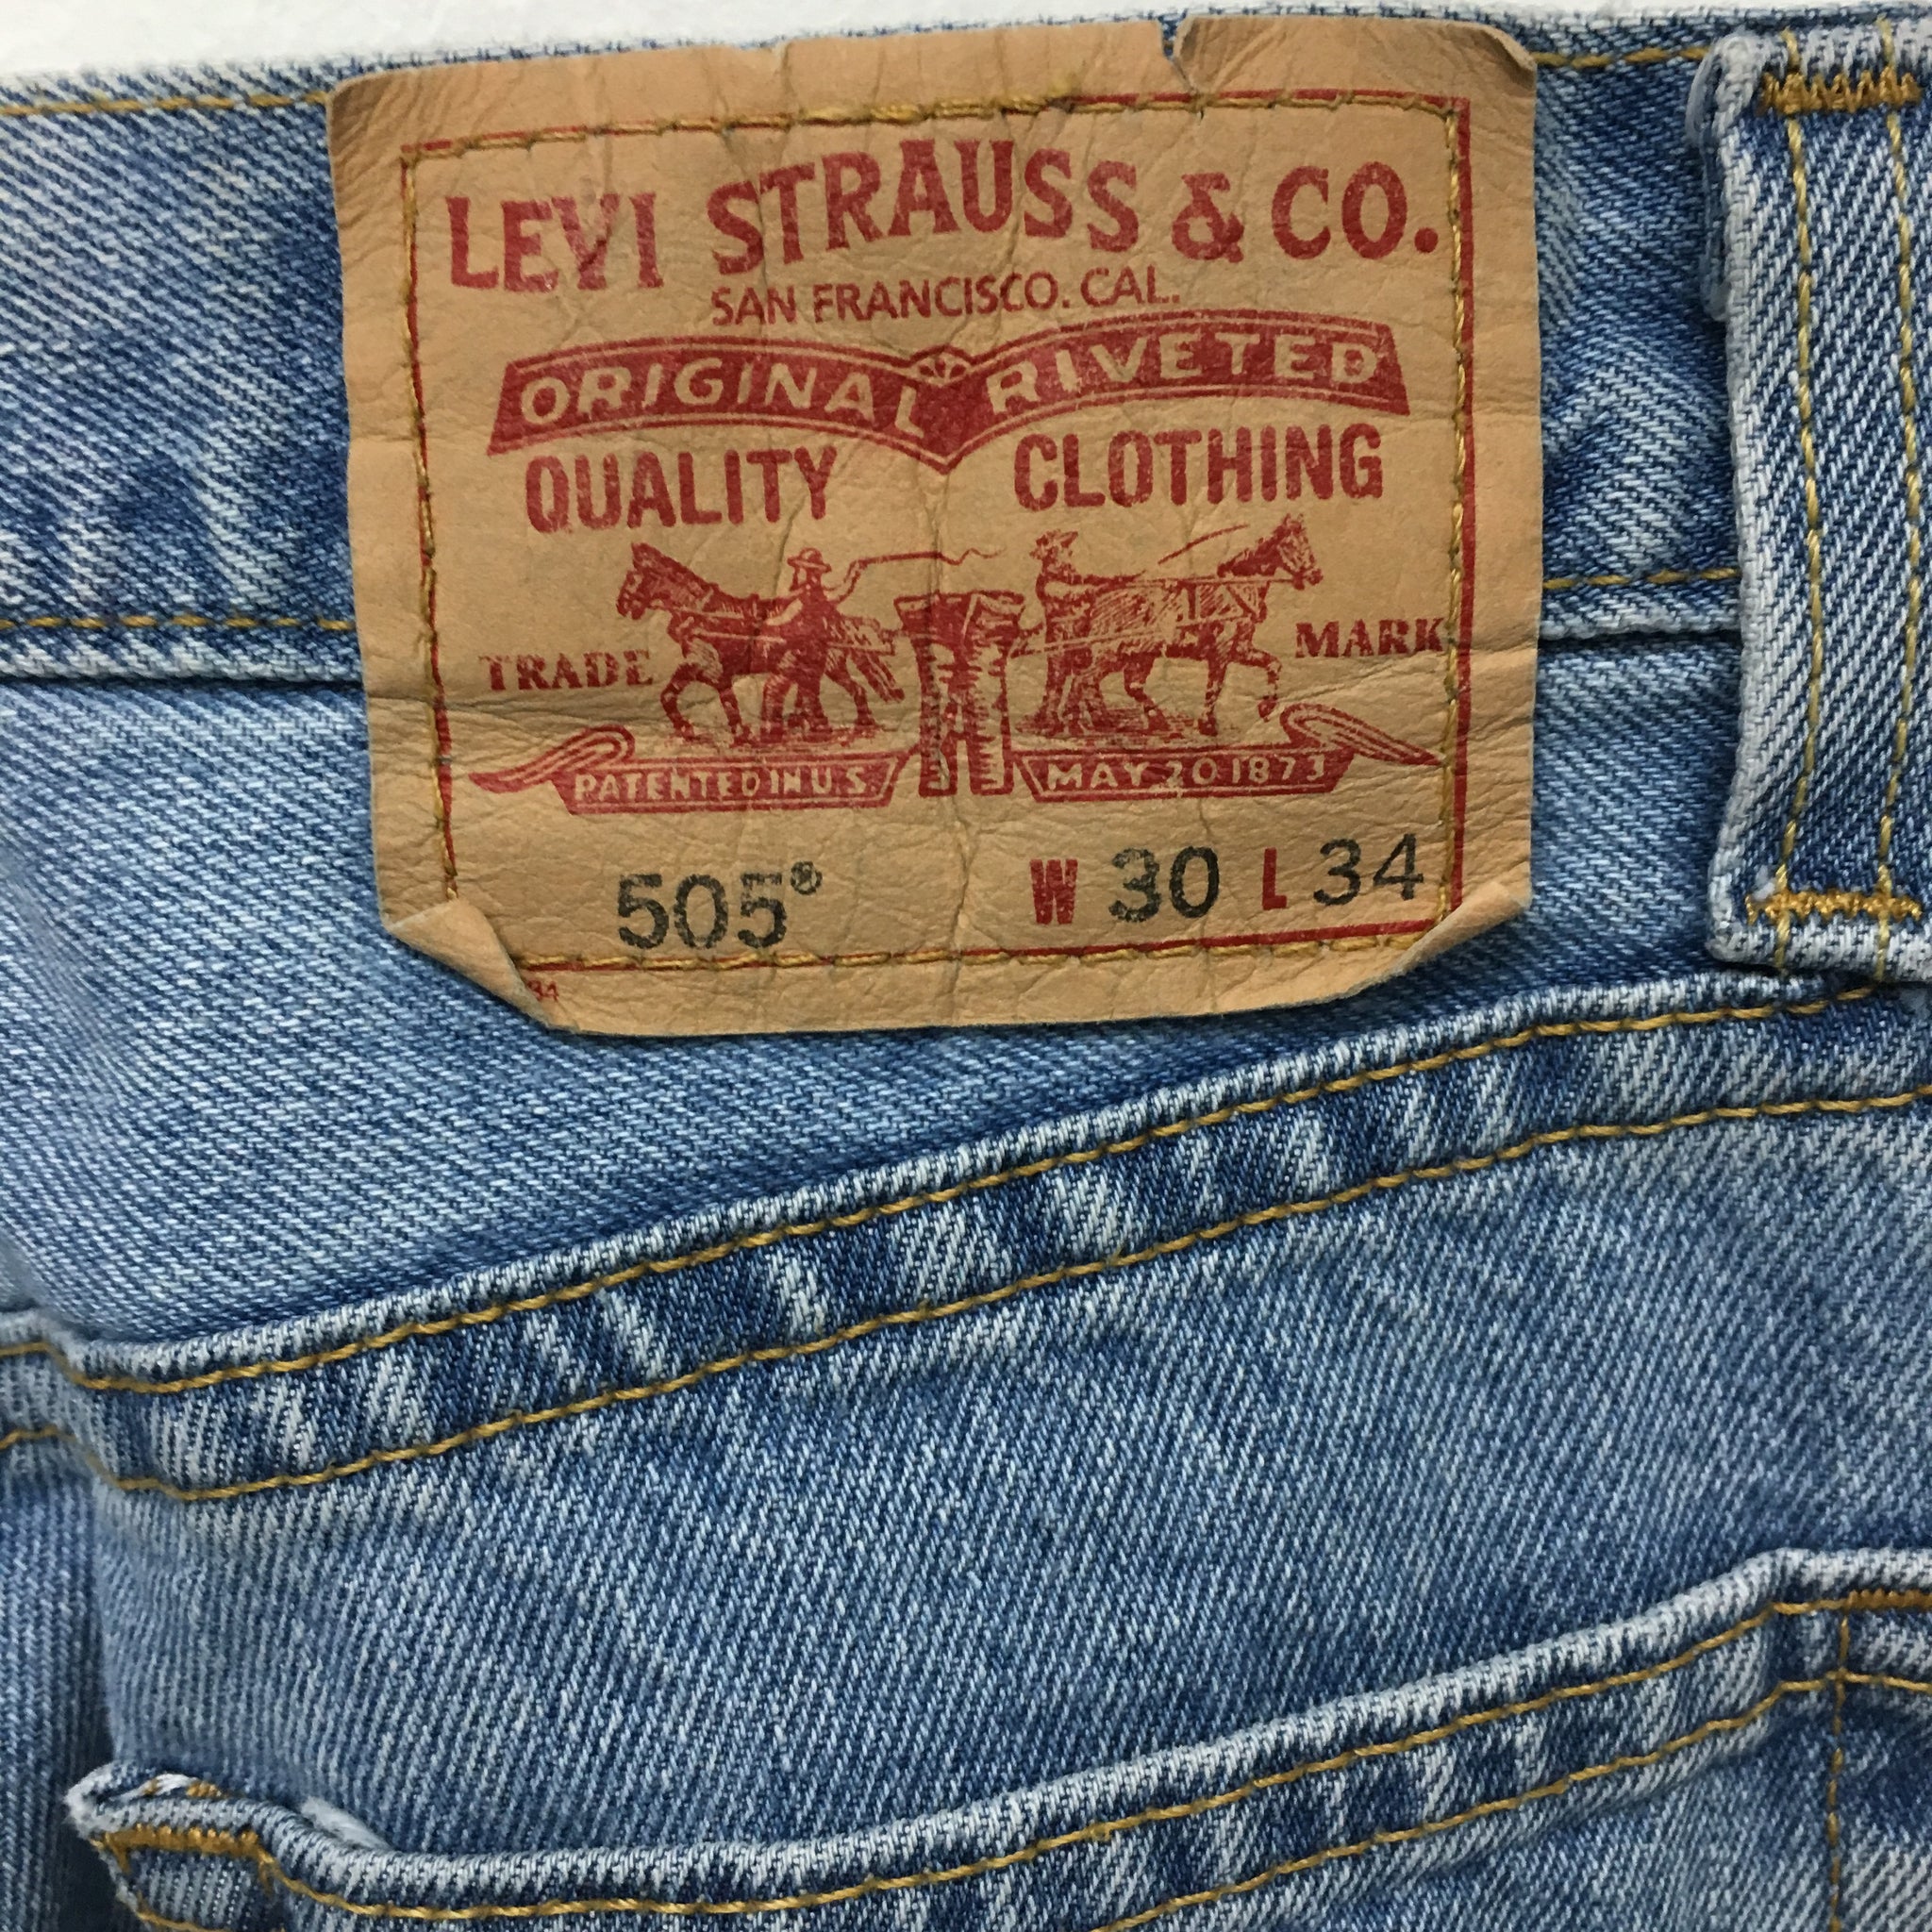 LEVIS 505 Vintage Light Wash Jeans Size 